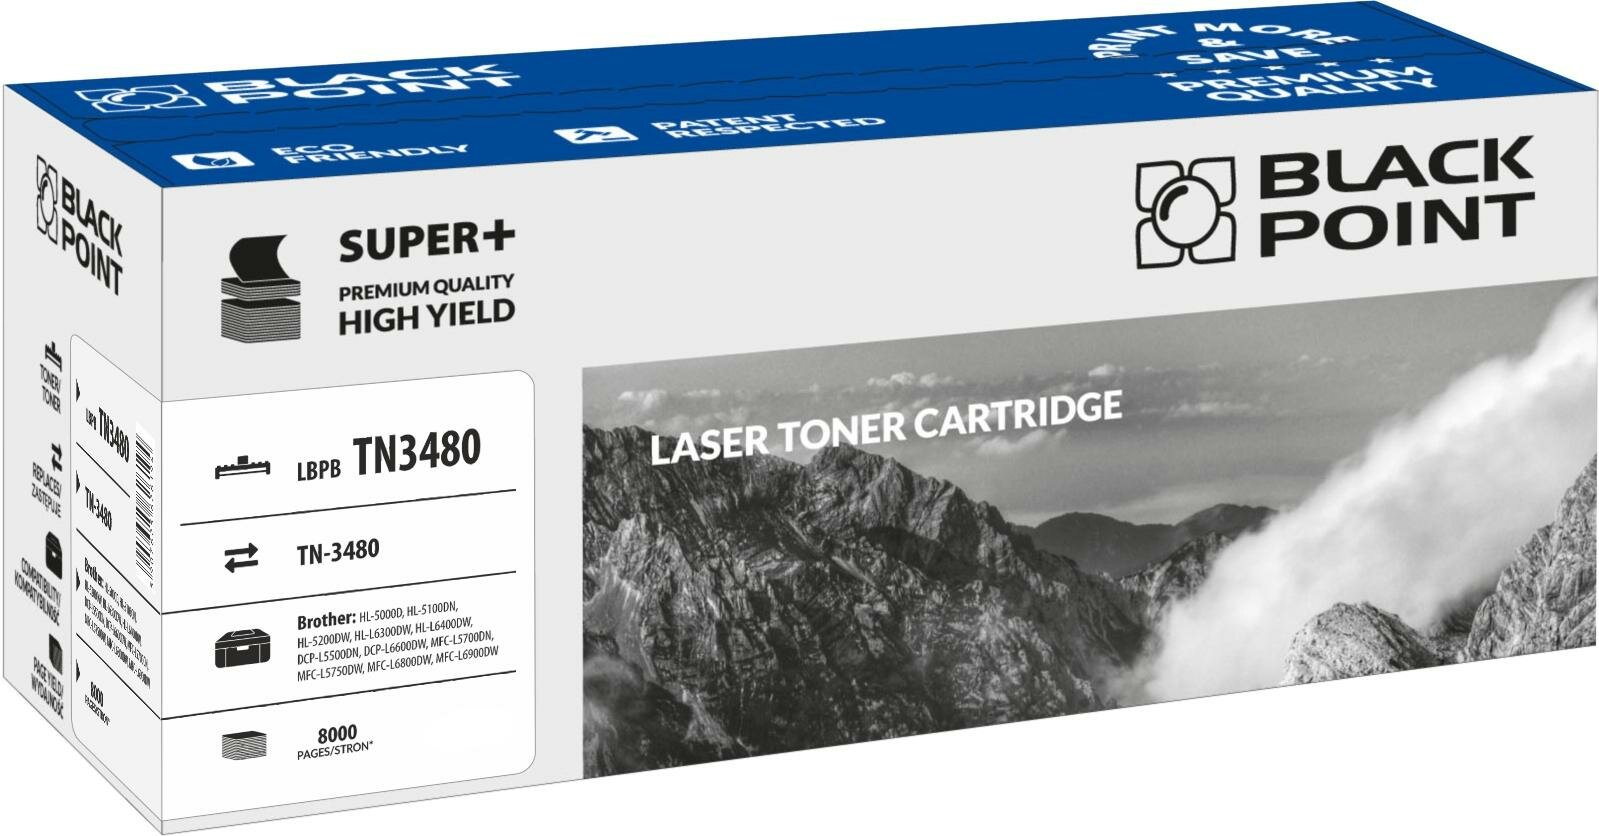 Toner laserowy Black Point Super Plus LBPBTN3480 widokna opakownie przodem